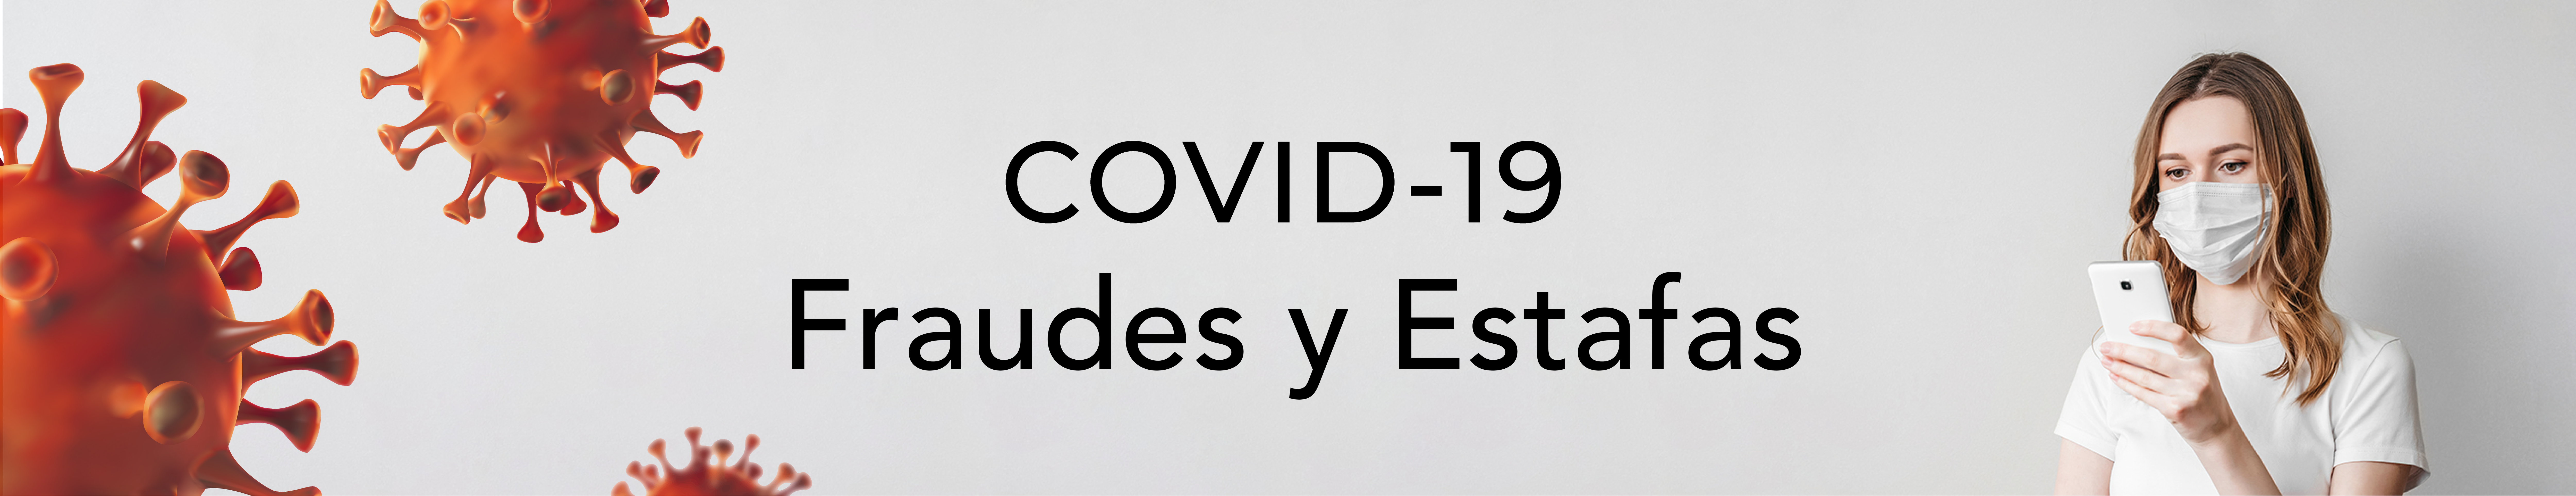 Fraudes y Estafas Relacionadas con el COVID-19